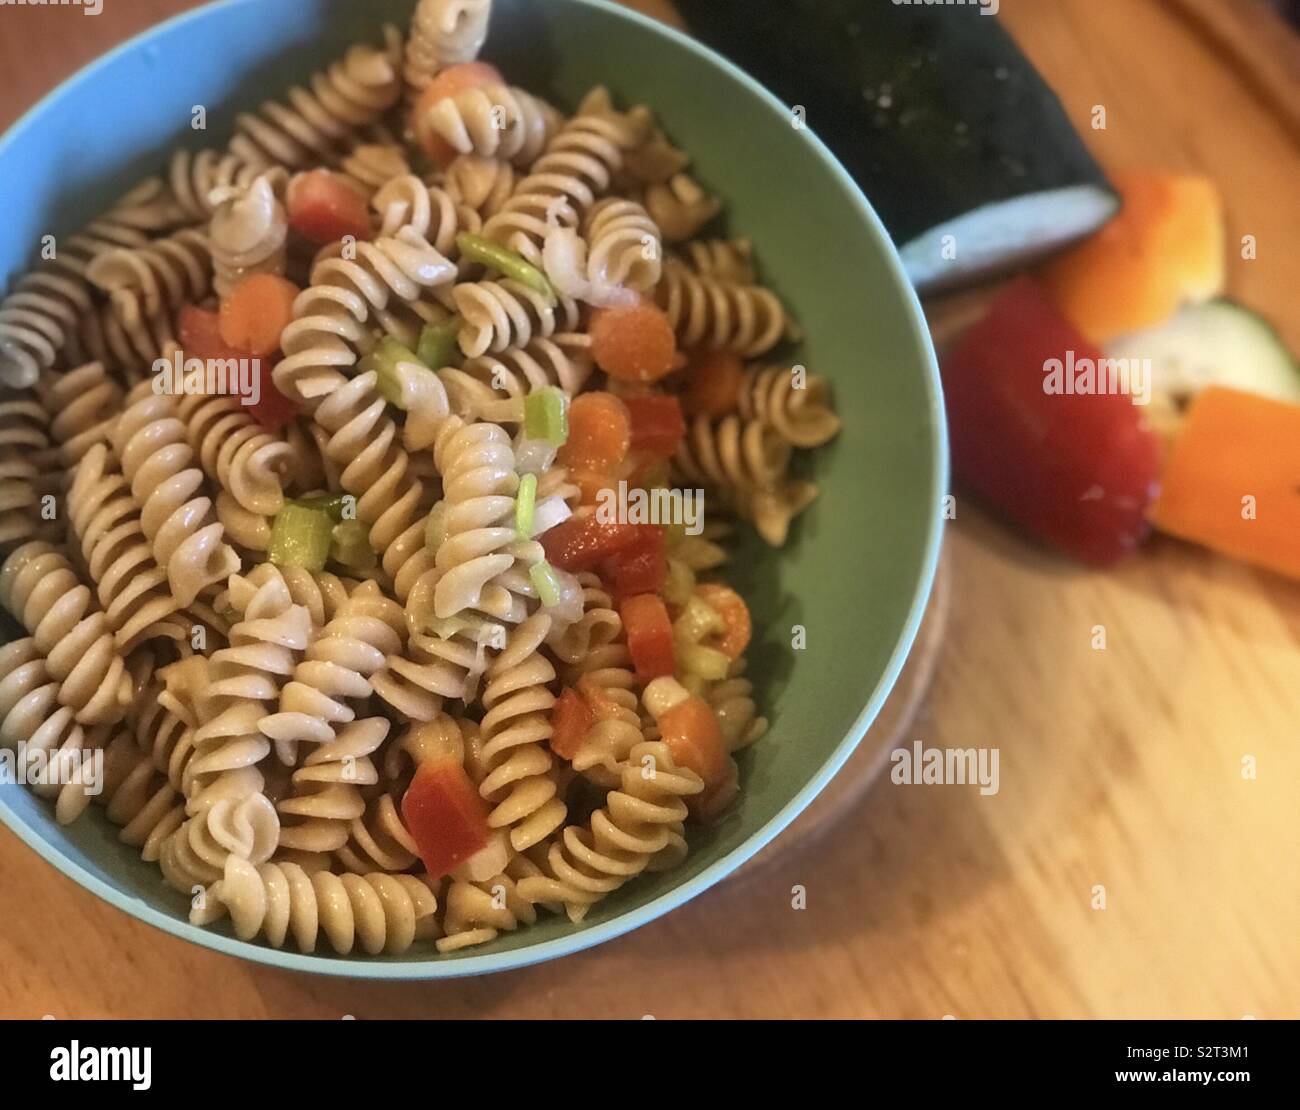 Eine köstliche Schüssel Nudelsalat mit Paprika, Gurken, Knoblauch würzen und Karotten, mit gehacktem Gemüse auf der Seite angezeigt. Stockfoto